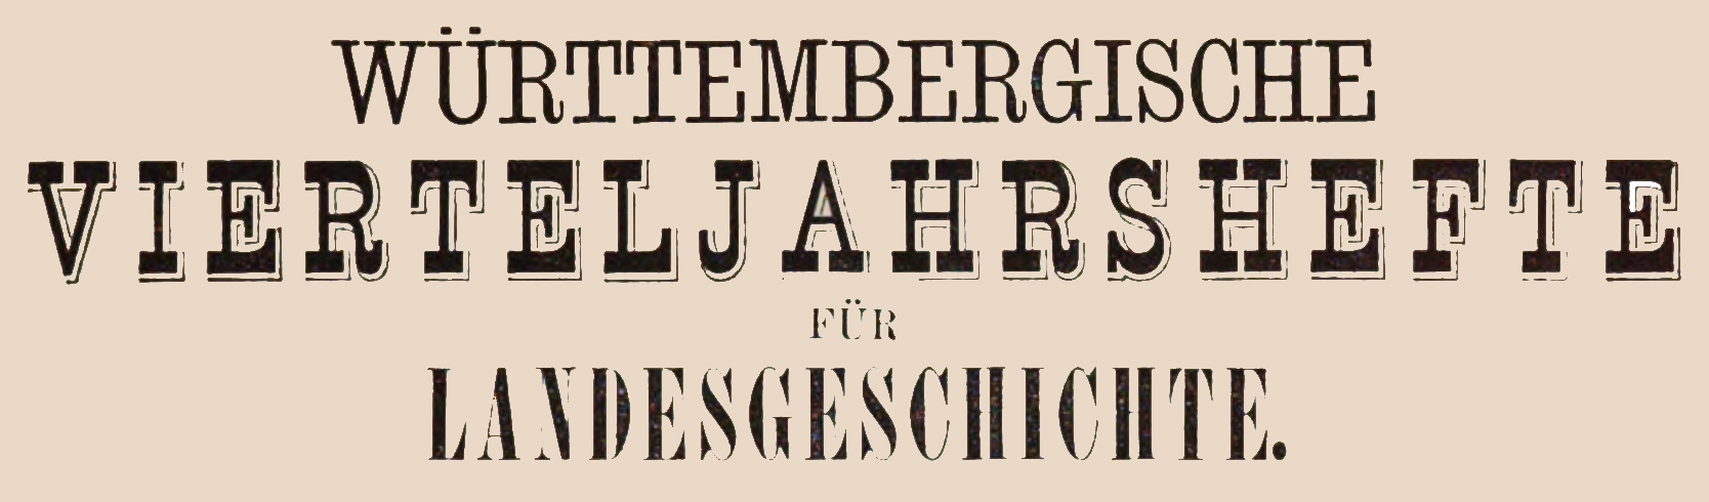 Württembergische Vierteljahrshefte für Landesgeschichte Logo 